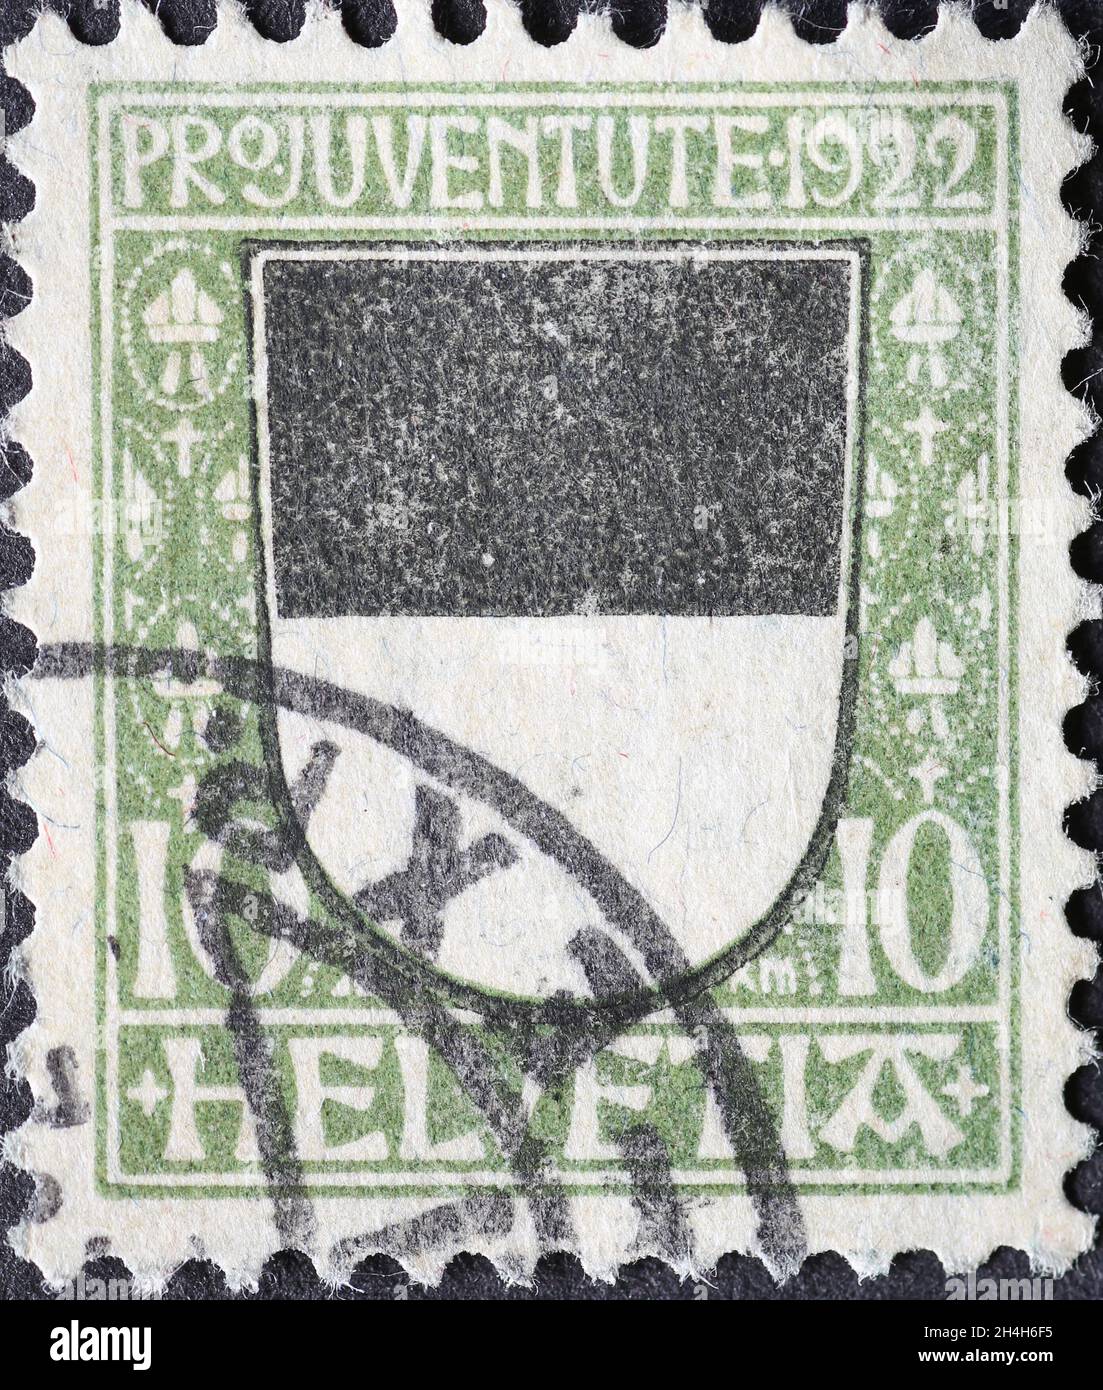 Svizzera - circa 1922: Francobollo stampato in Svizzera con uno stemma bianco e nero del cantone svizzero di Friburgo su un chari Foto Stock